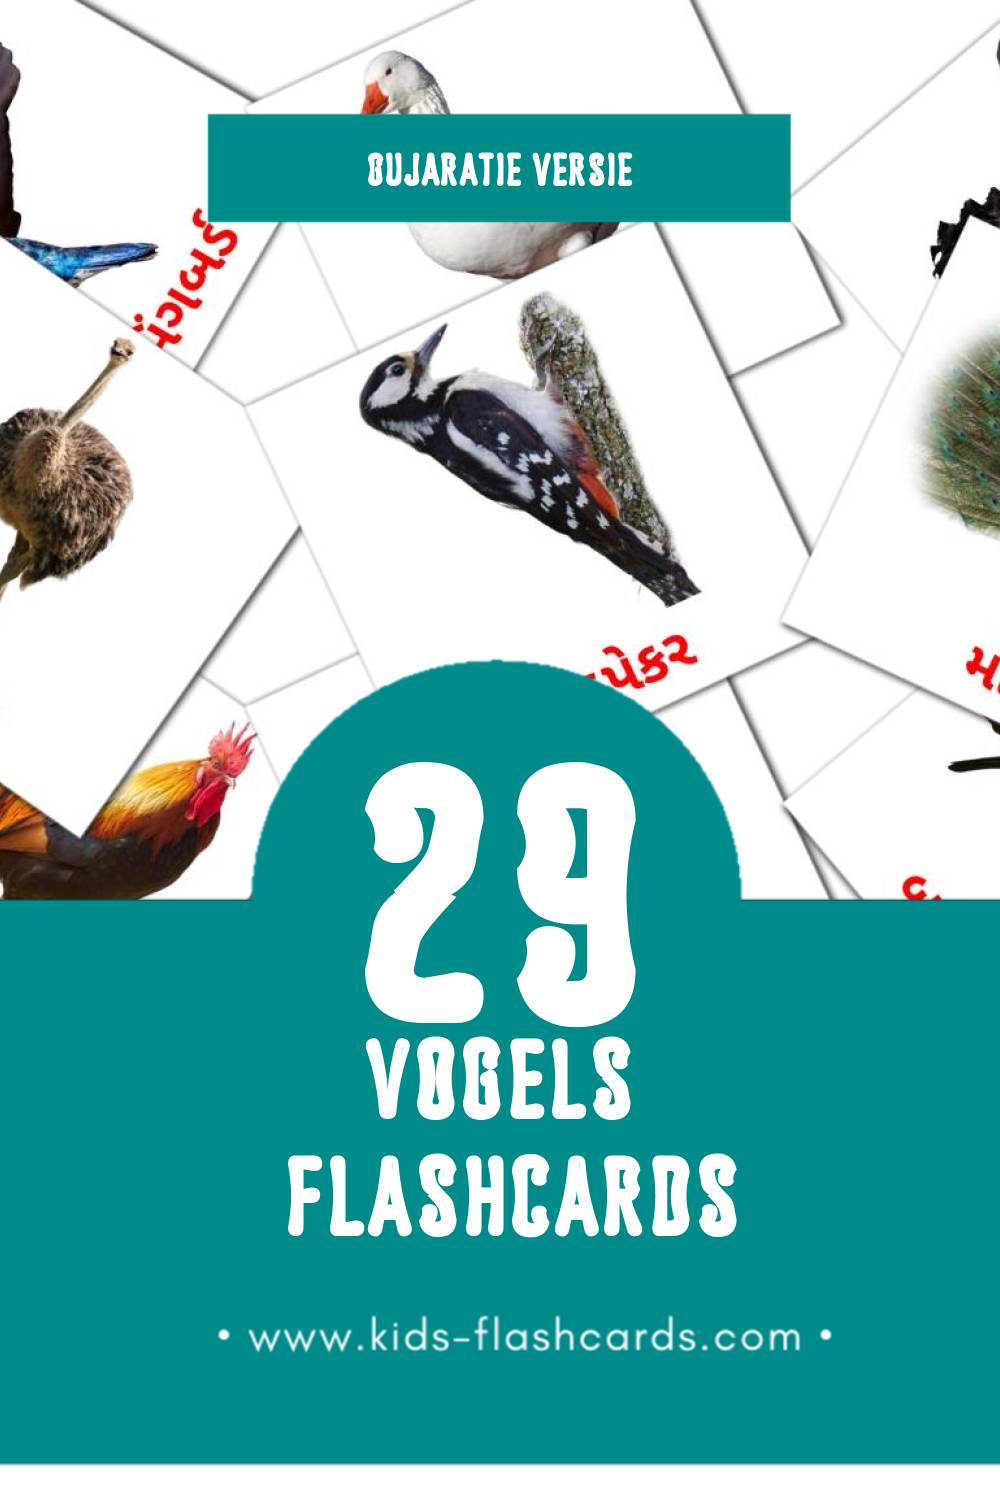 Visuele પક્ષીઓ Flashcards voor Kleuters (29 kaarten in het Gujarati)